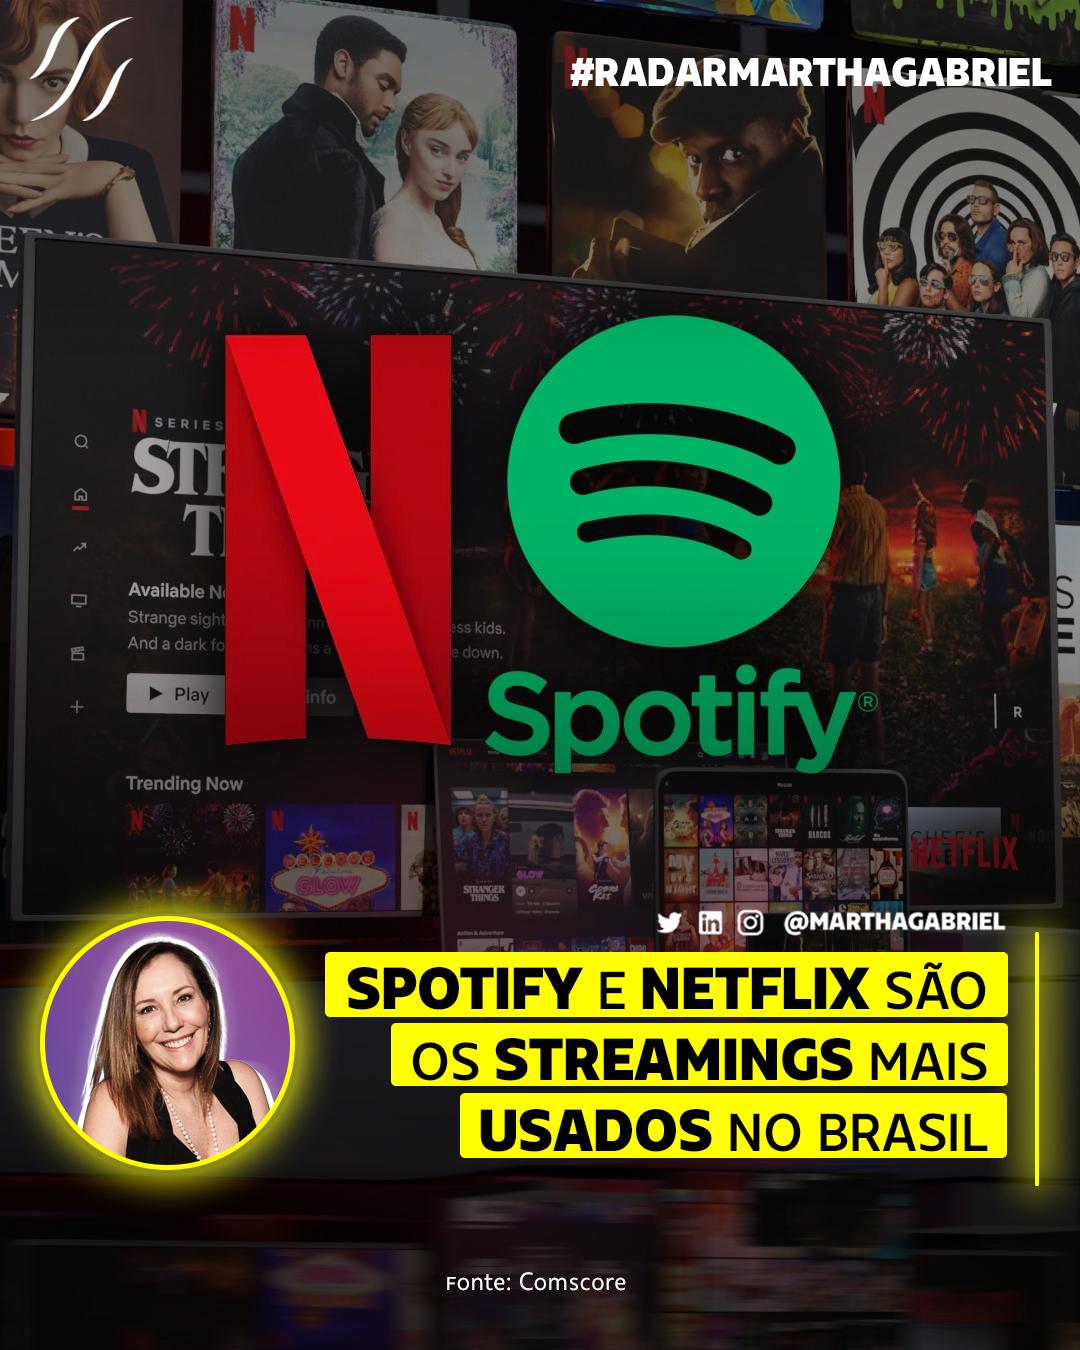 Spotify e Netflix são os streamings mais usados no Brasil